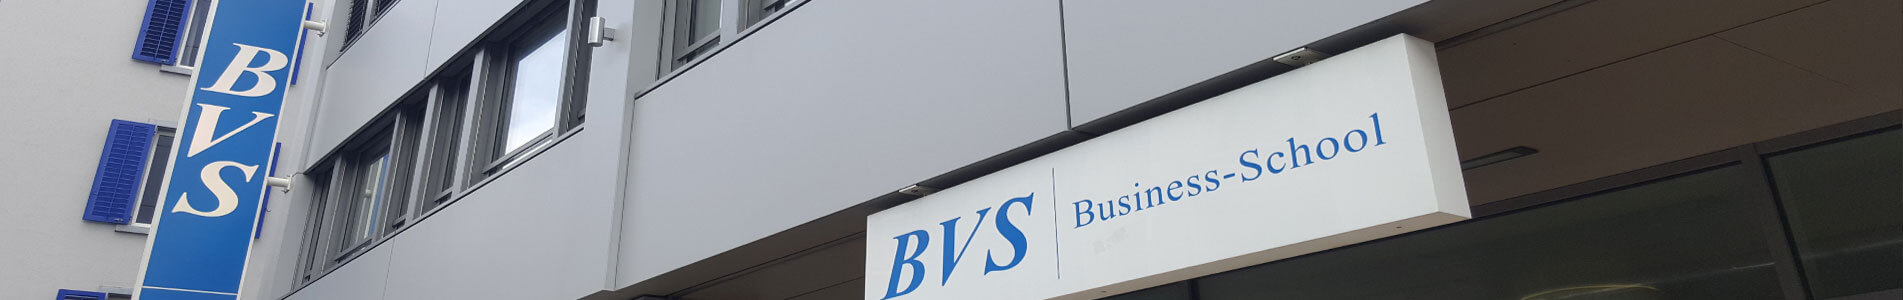 BVS Business School - Bachelor - Master - Degree